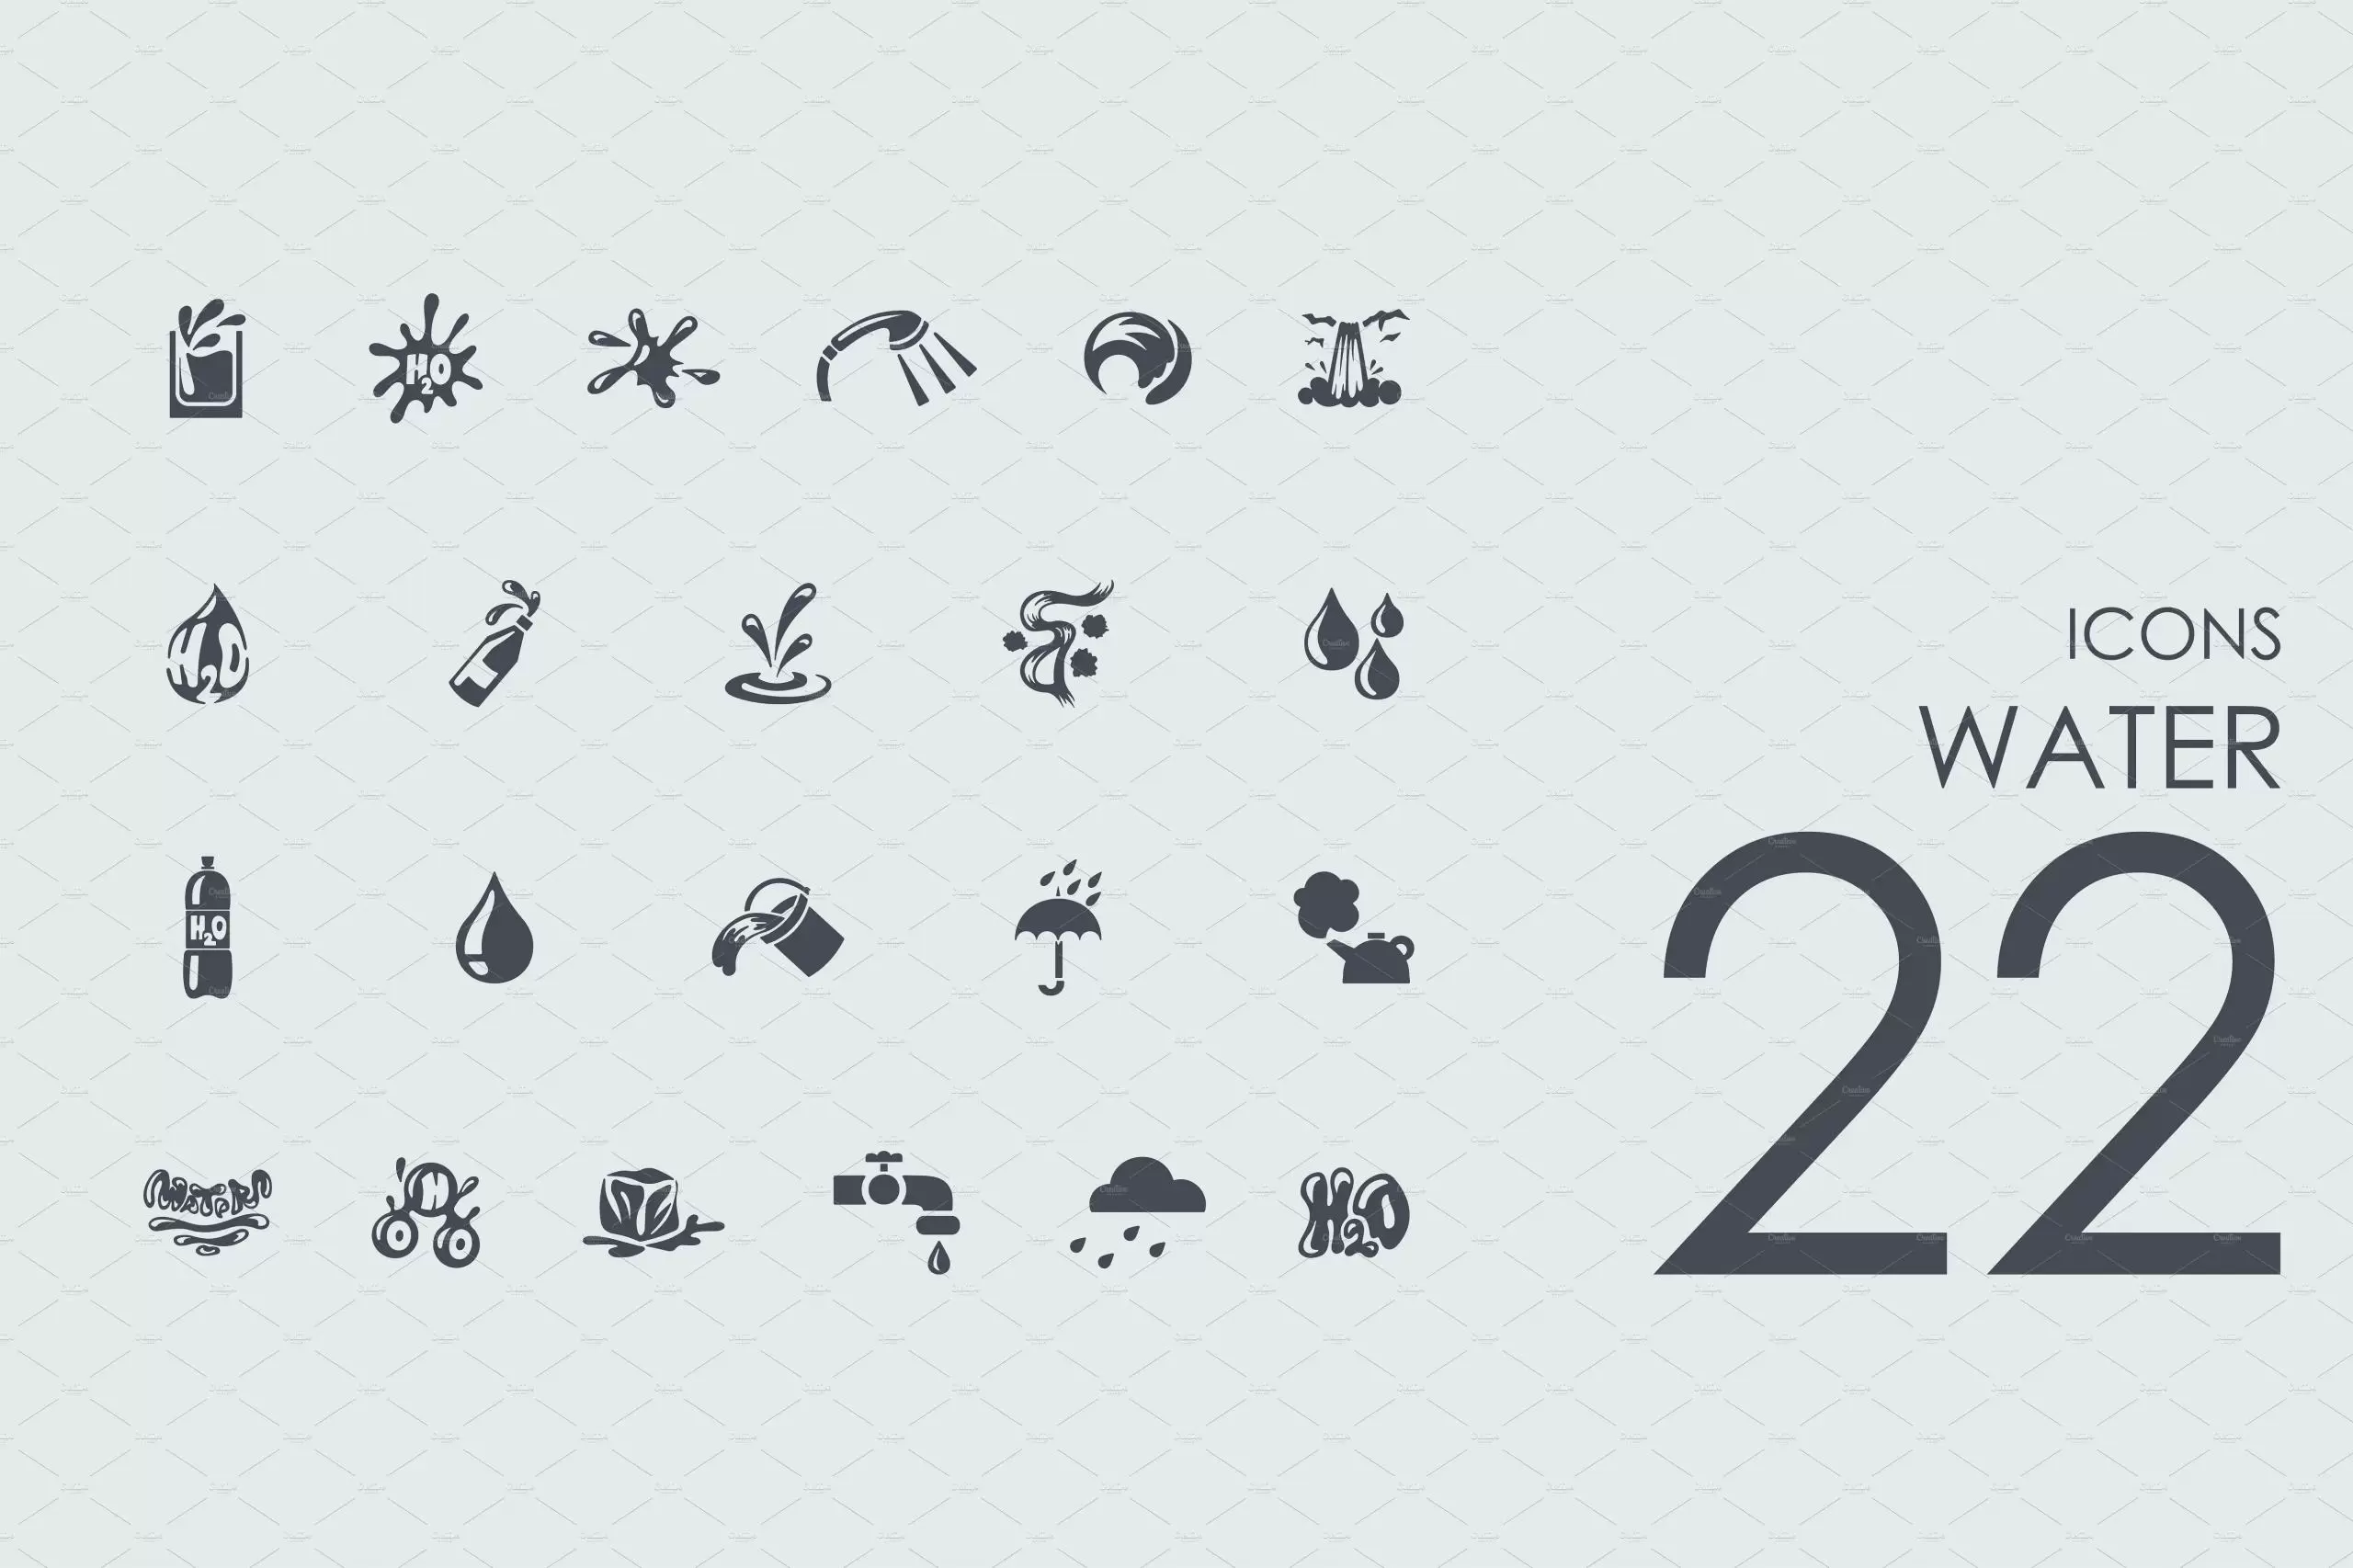 水资源图标素材 22 Water icons插图